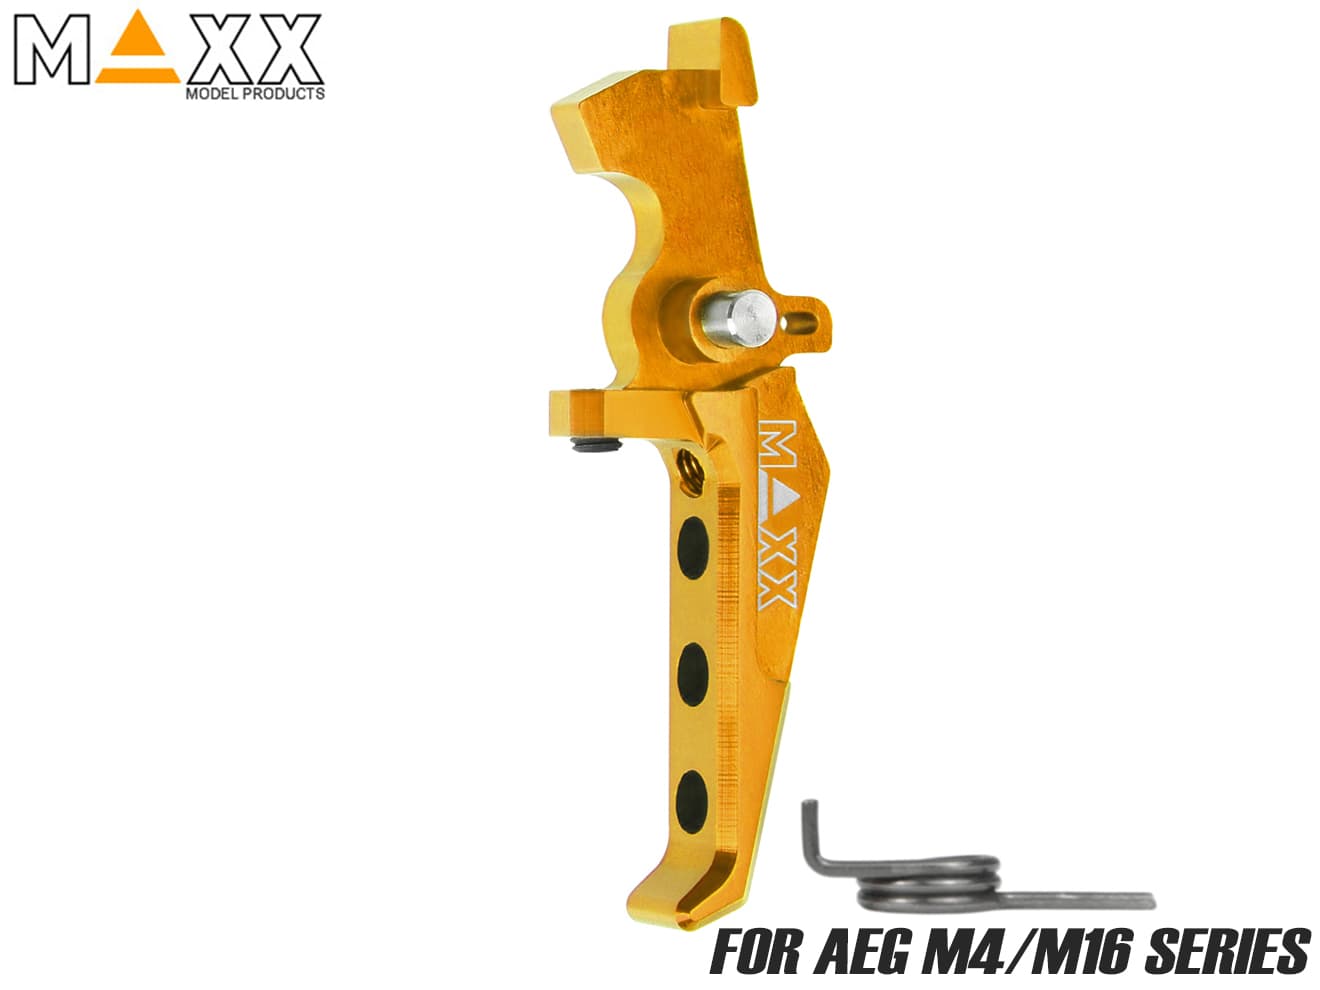 MAXX アルミCNC アドバンスド スピードトリガー type E for AEG M4 オレンジ各社スタンダード AEG M4/M16対応 オーバートラベル調整機能搭載